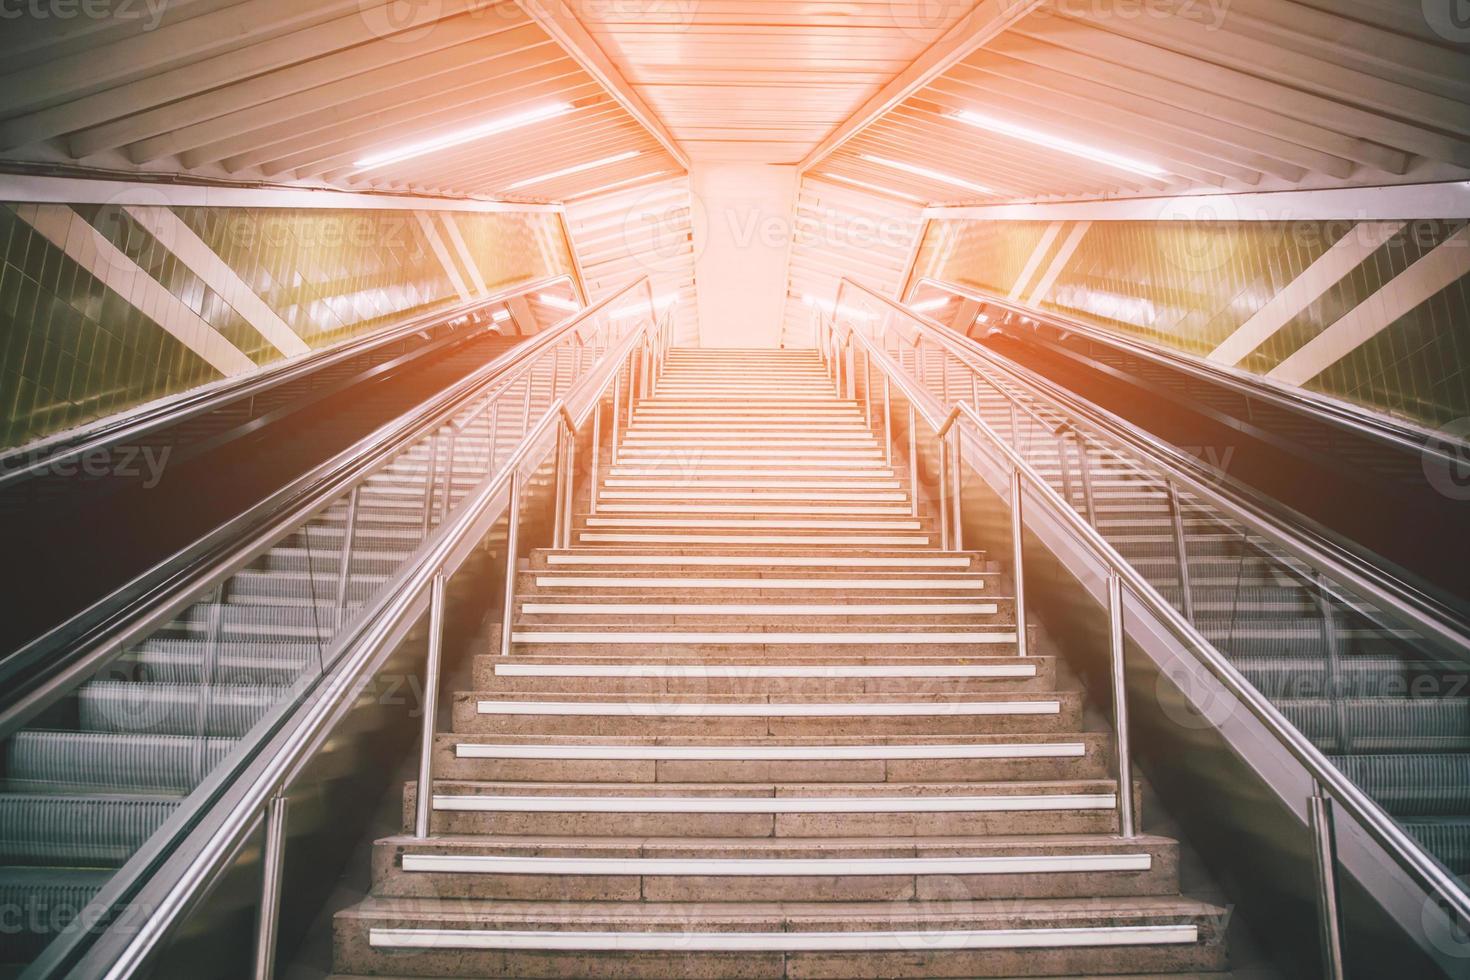 escalera mecánica vacía y escalera en la estación de metro peatonal. ESCALERA DE SUBTE SUBTERRANEA HACIA ARRIBA. concepto de viaje Europa. foto